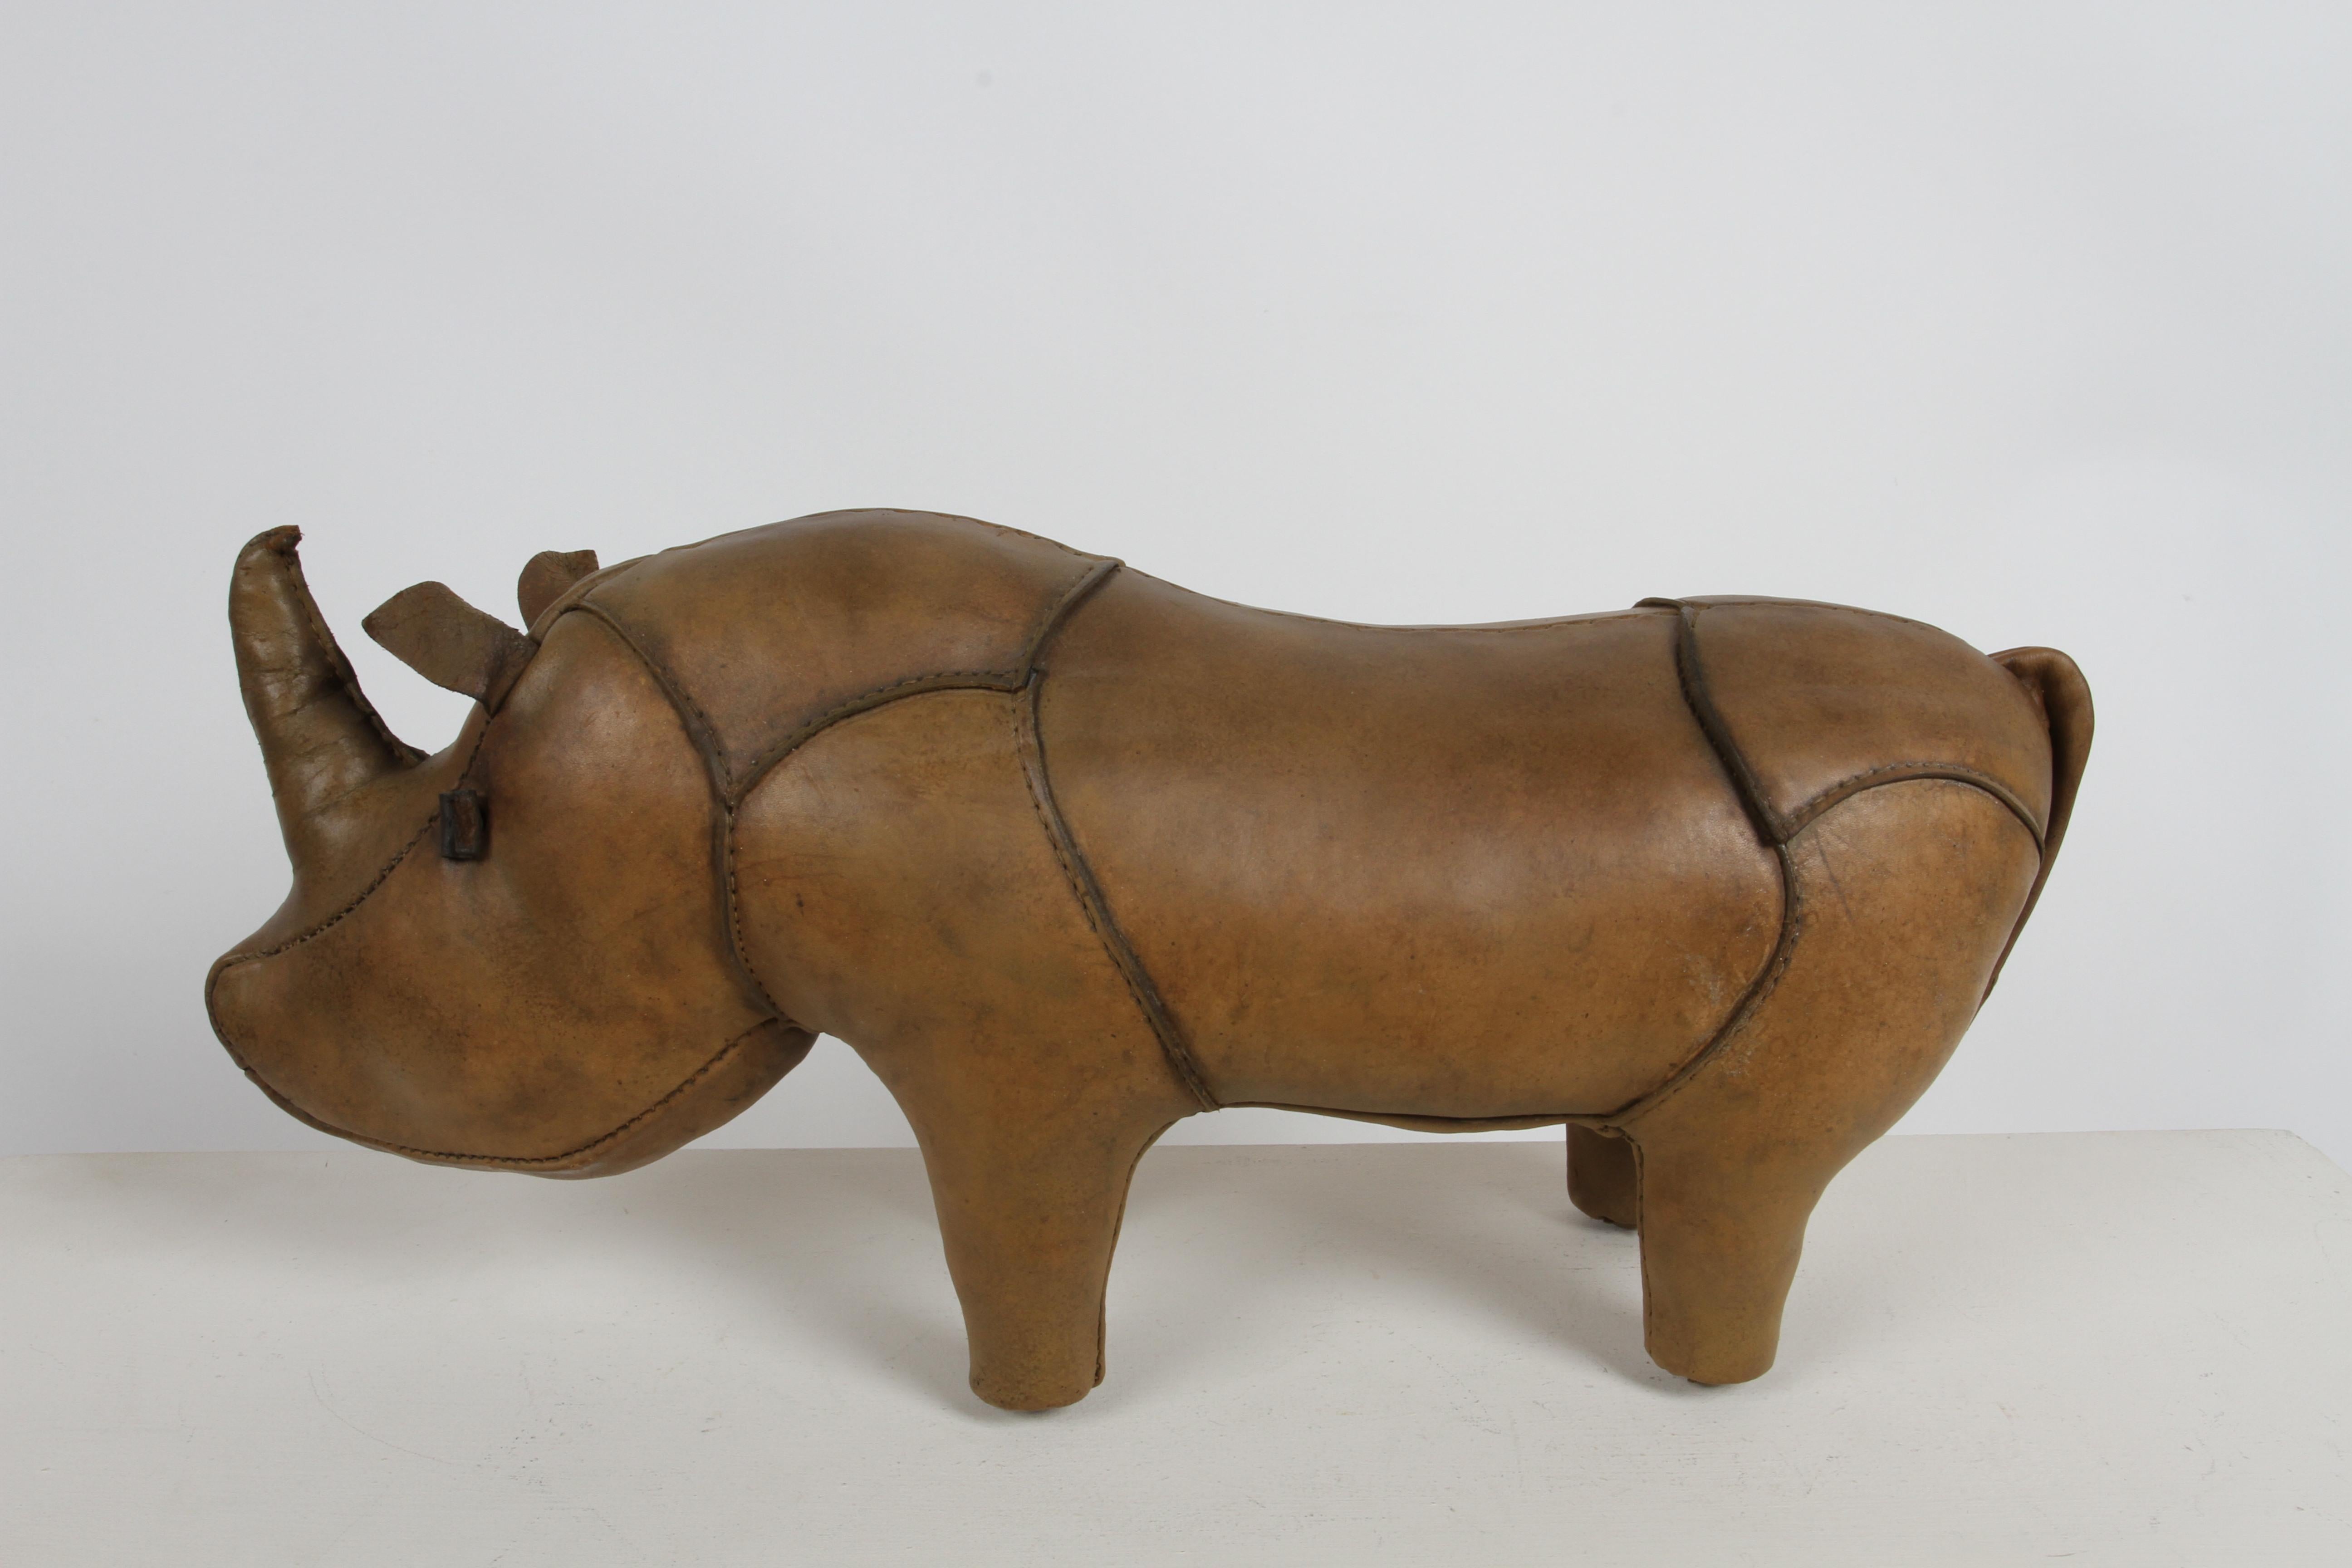 Frühe Vintage 1960s Leder Ottomane / Skulptur in Form von Rhino, hergestellt von Omersa und wurde von Abercrombie & Fitch vertrieben. Dieses Nashorn wurde überarbeitet, einschließlich neuer Omersa Fabrik Ersatz Schwanz, die sehr häufig ist. Die